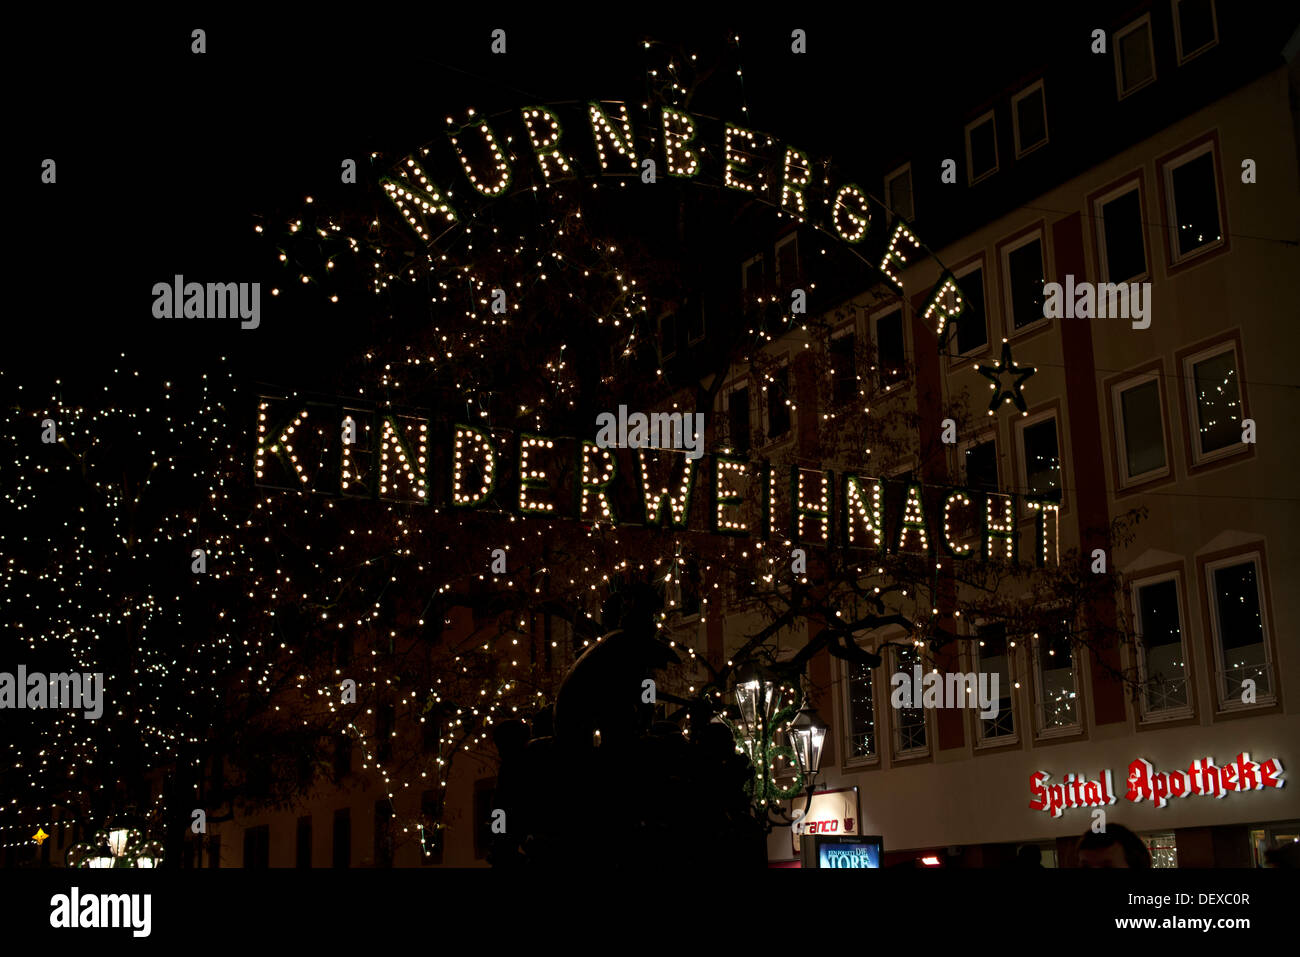 Célèbre Marché de Noël à Nuremberg dans la soirée. Abendstimmung auf dem Nürnberger Weihnachtsmarkt Banque D'Images